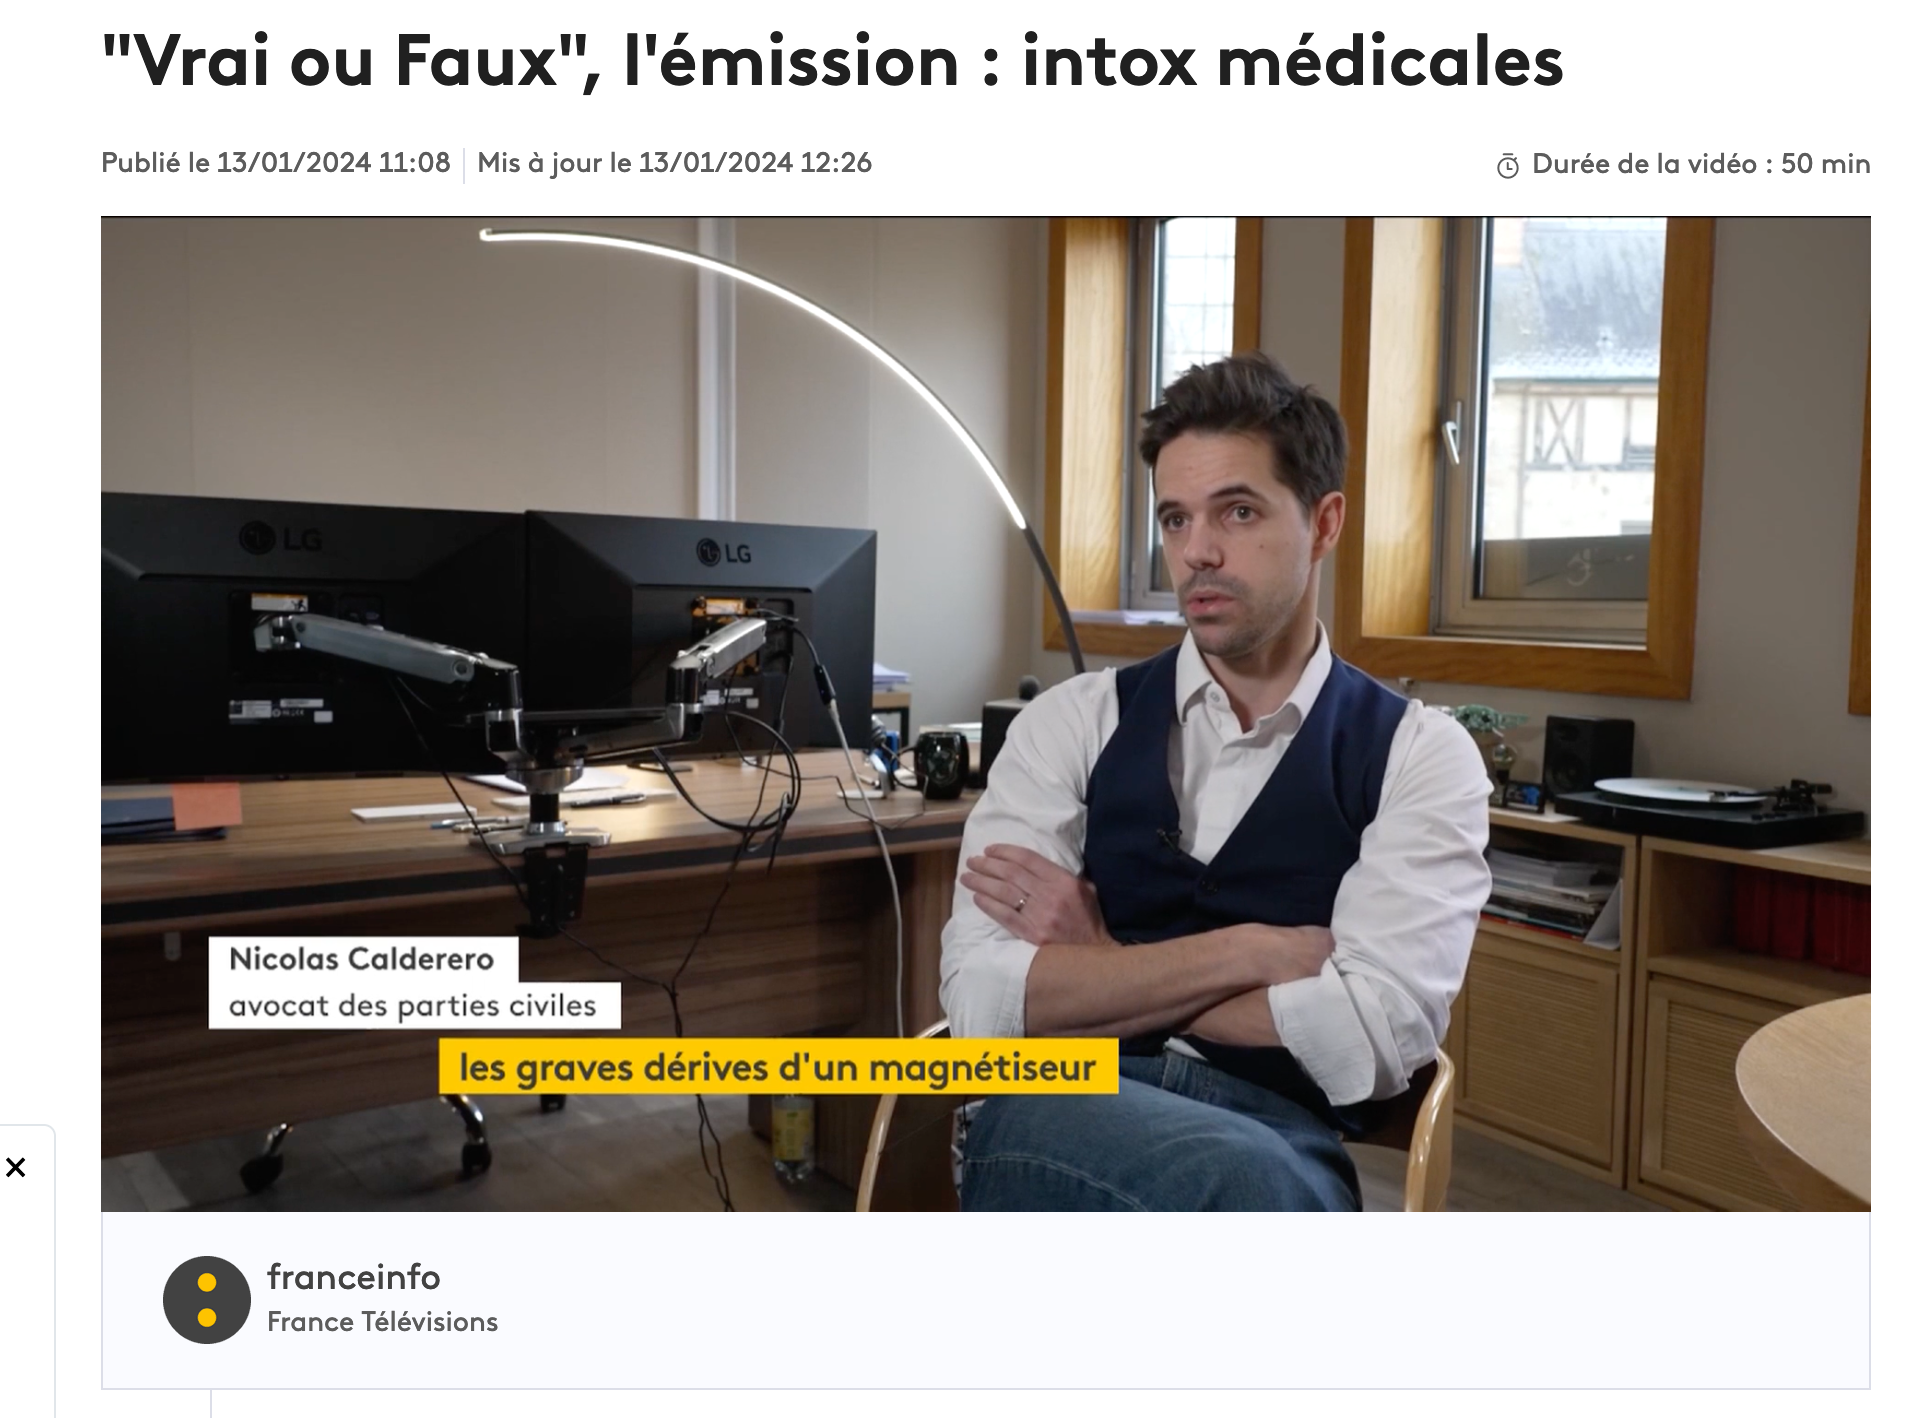 FranceInfo – Emission Vrai Faux – Magnétiseur et Viol